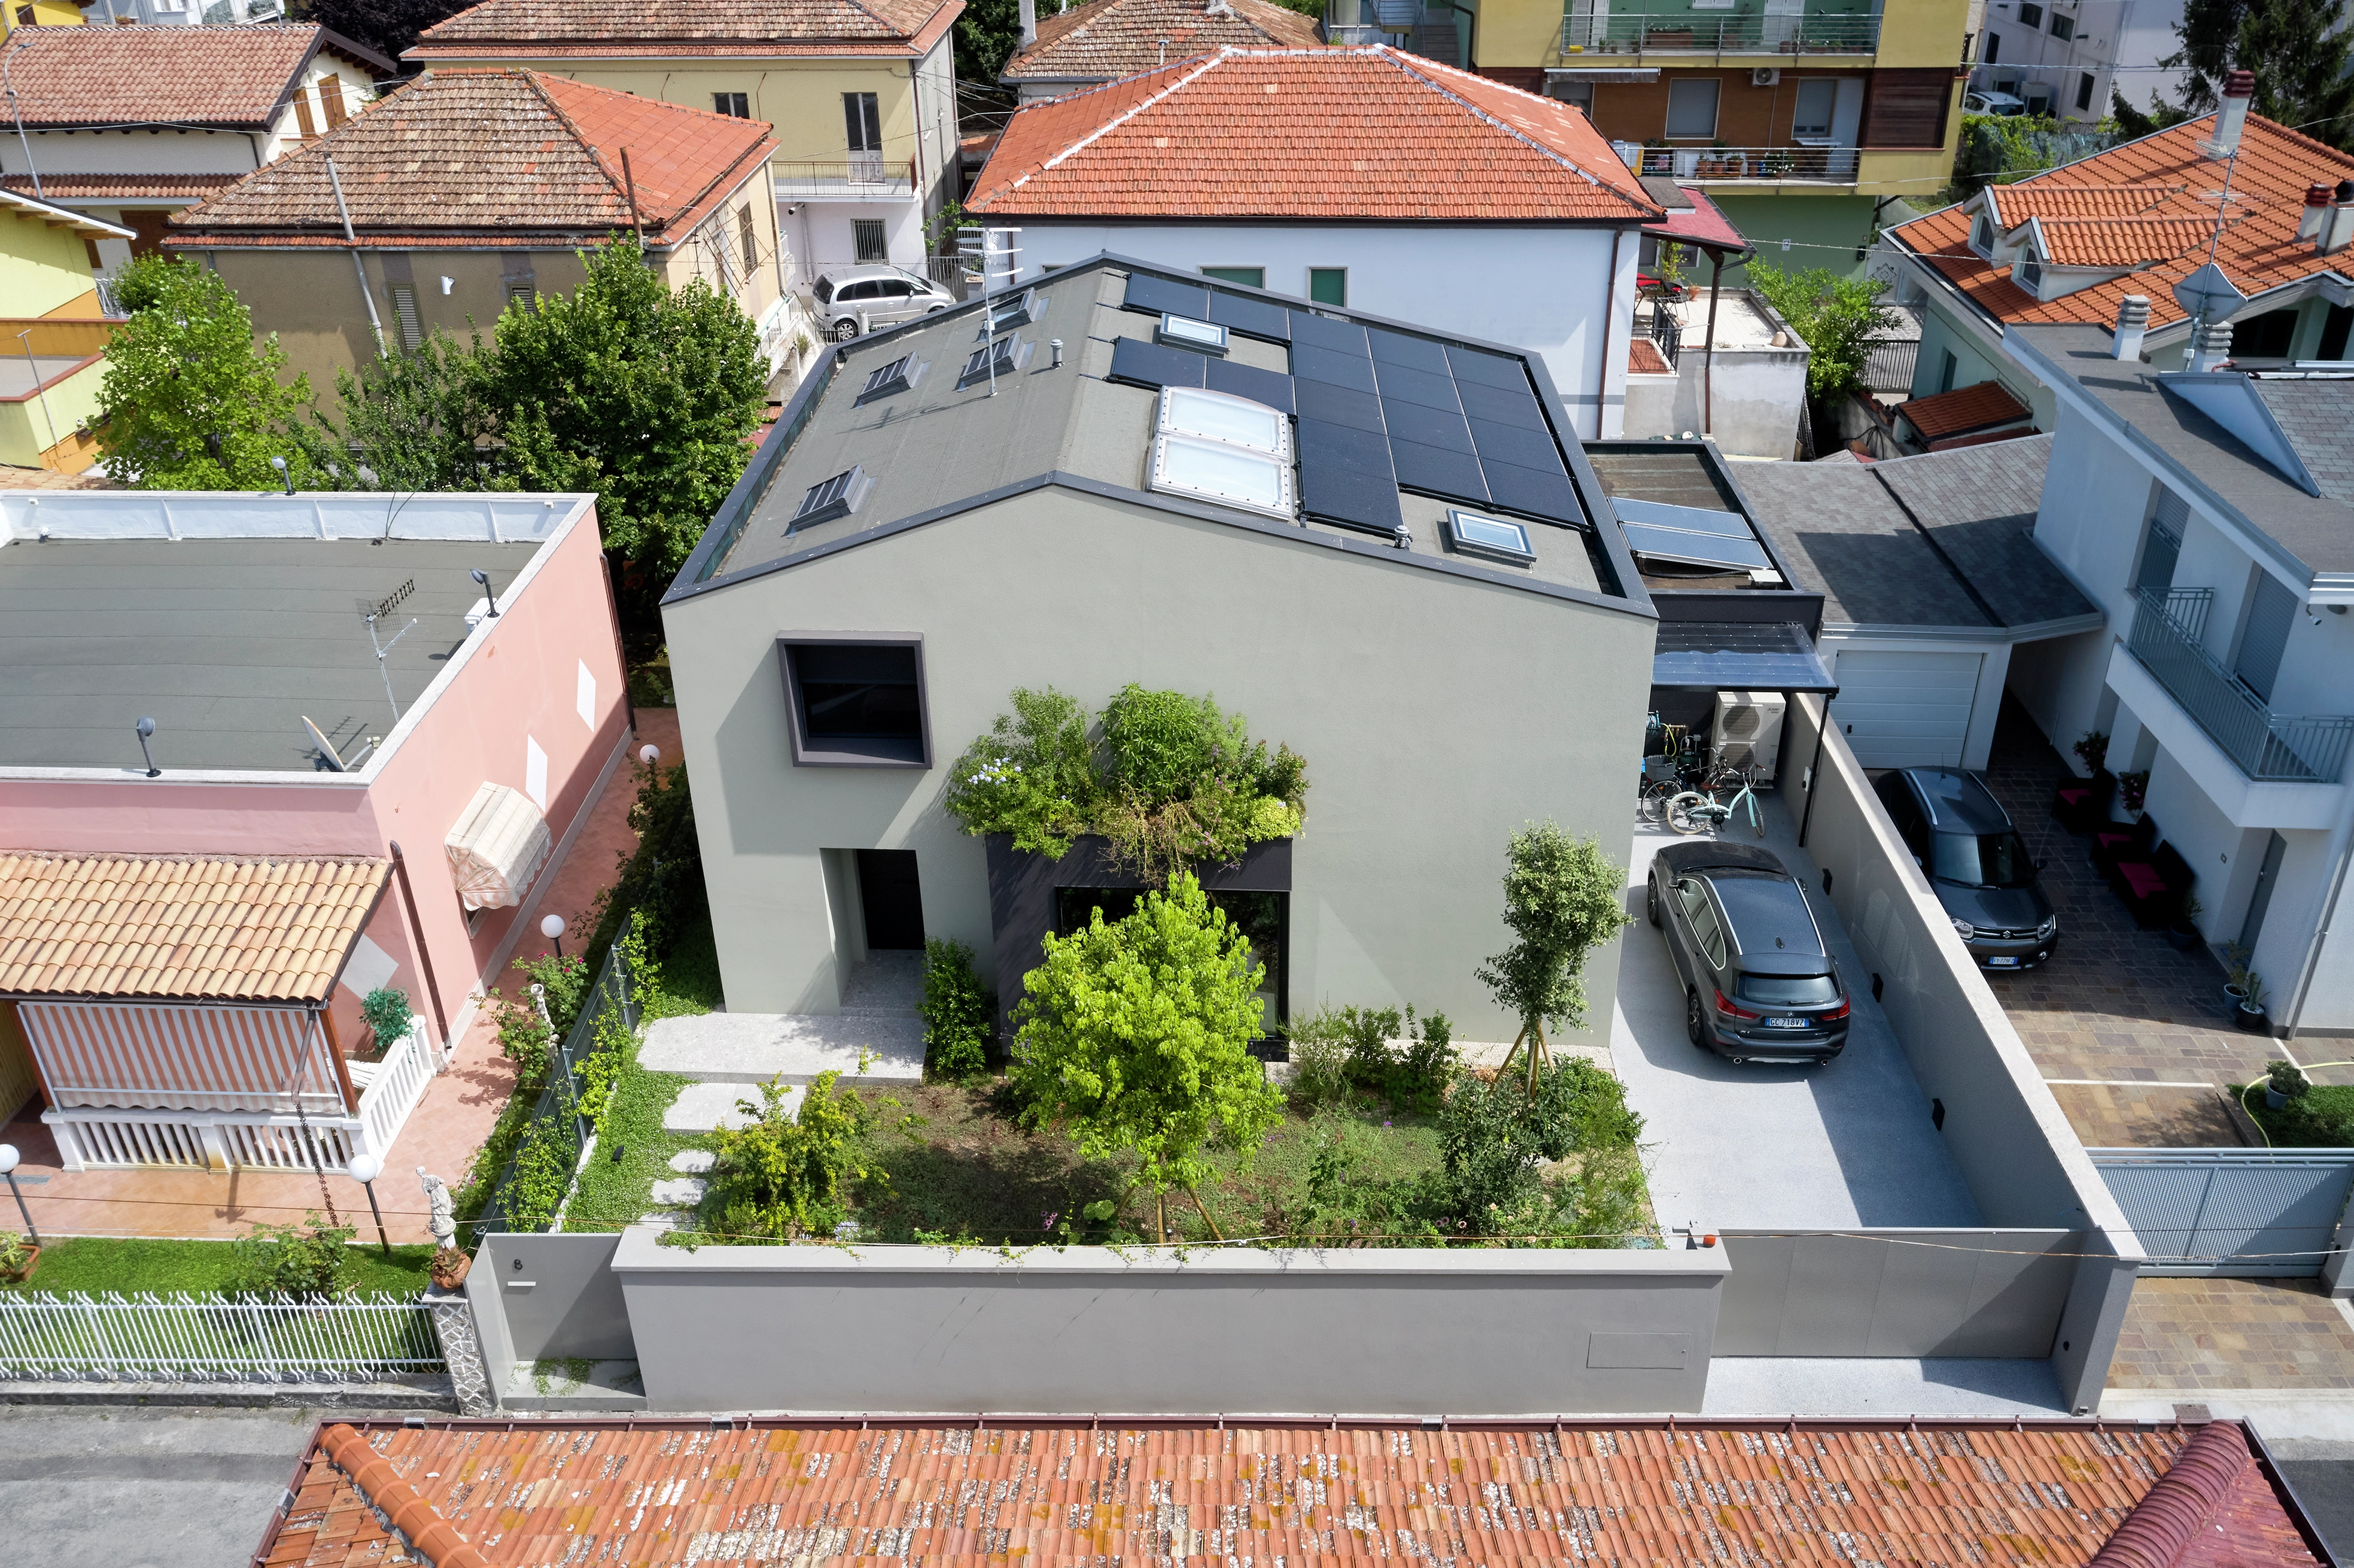 Casa unifamiliare moderna con finestra VELUX e pannelli solari, circondata dal verde.